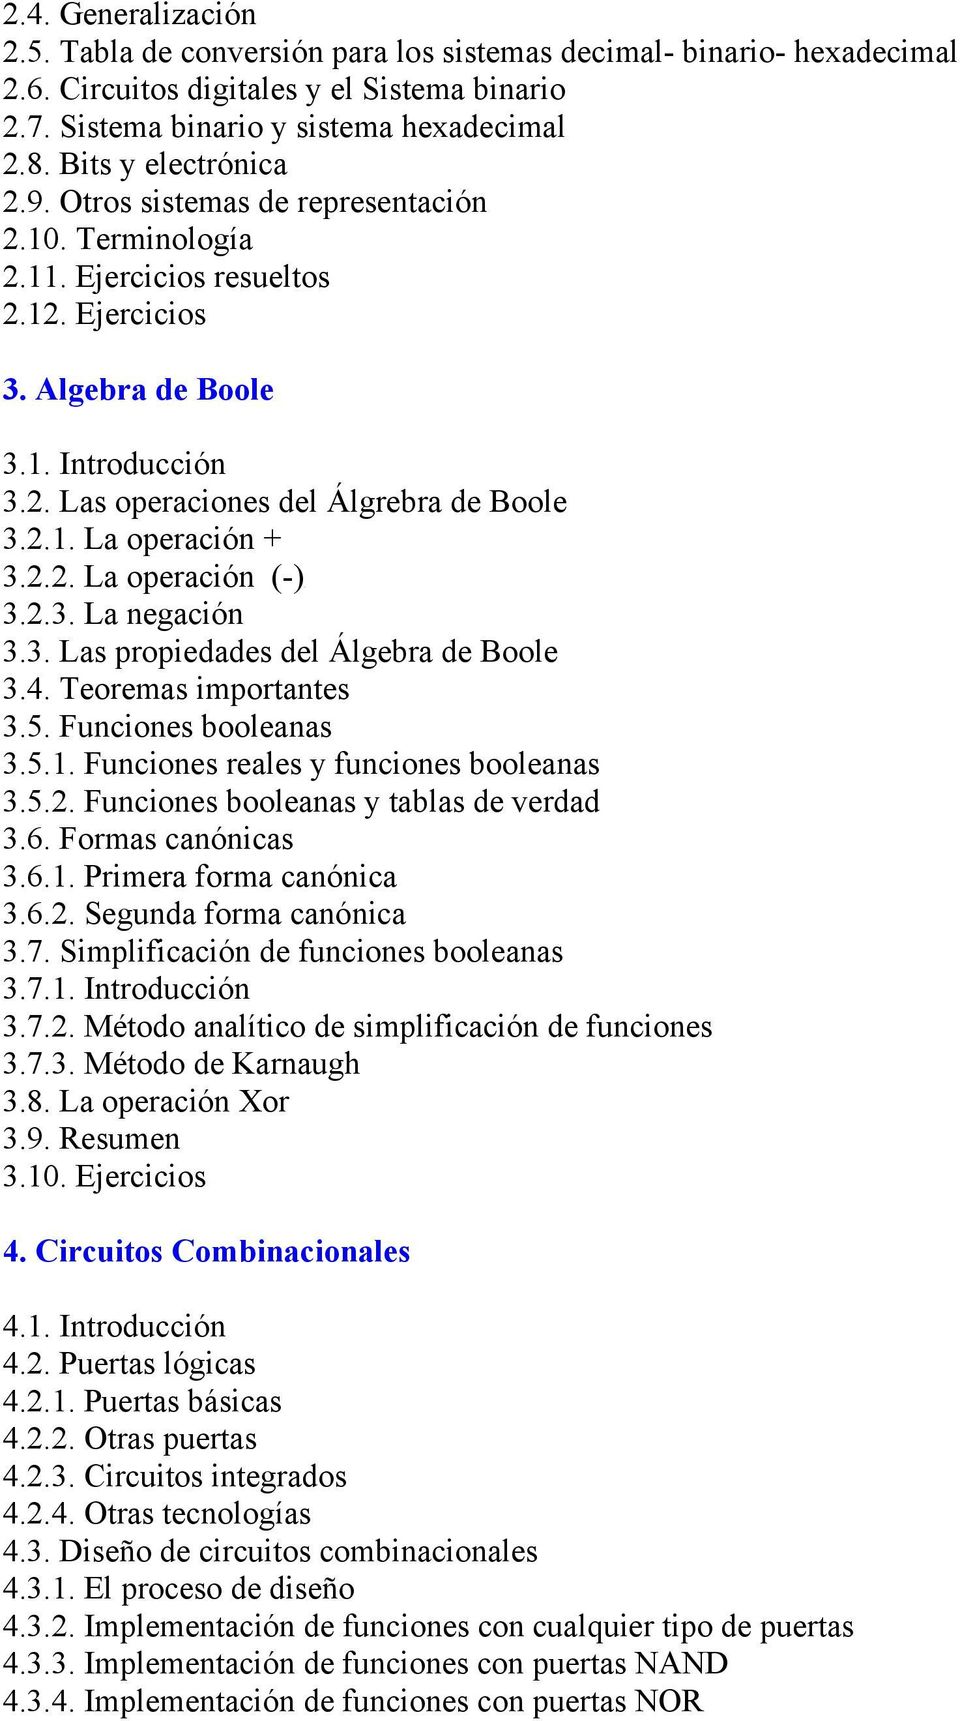 2.1. La operación + 3.2.2. La operación (-)_ 3.2.3. La negación 3.3. Las propiedades del Álgebra de Boole 3.4. Teoremas importantes 3.5. Funciones booleanas 3.5.1. Funciones reales y funciones booleanas 3.